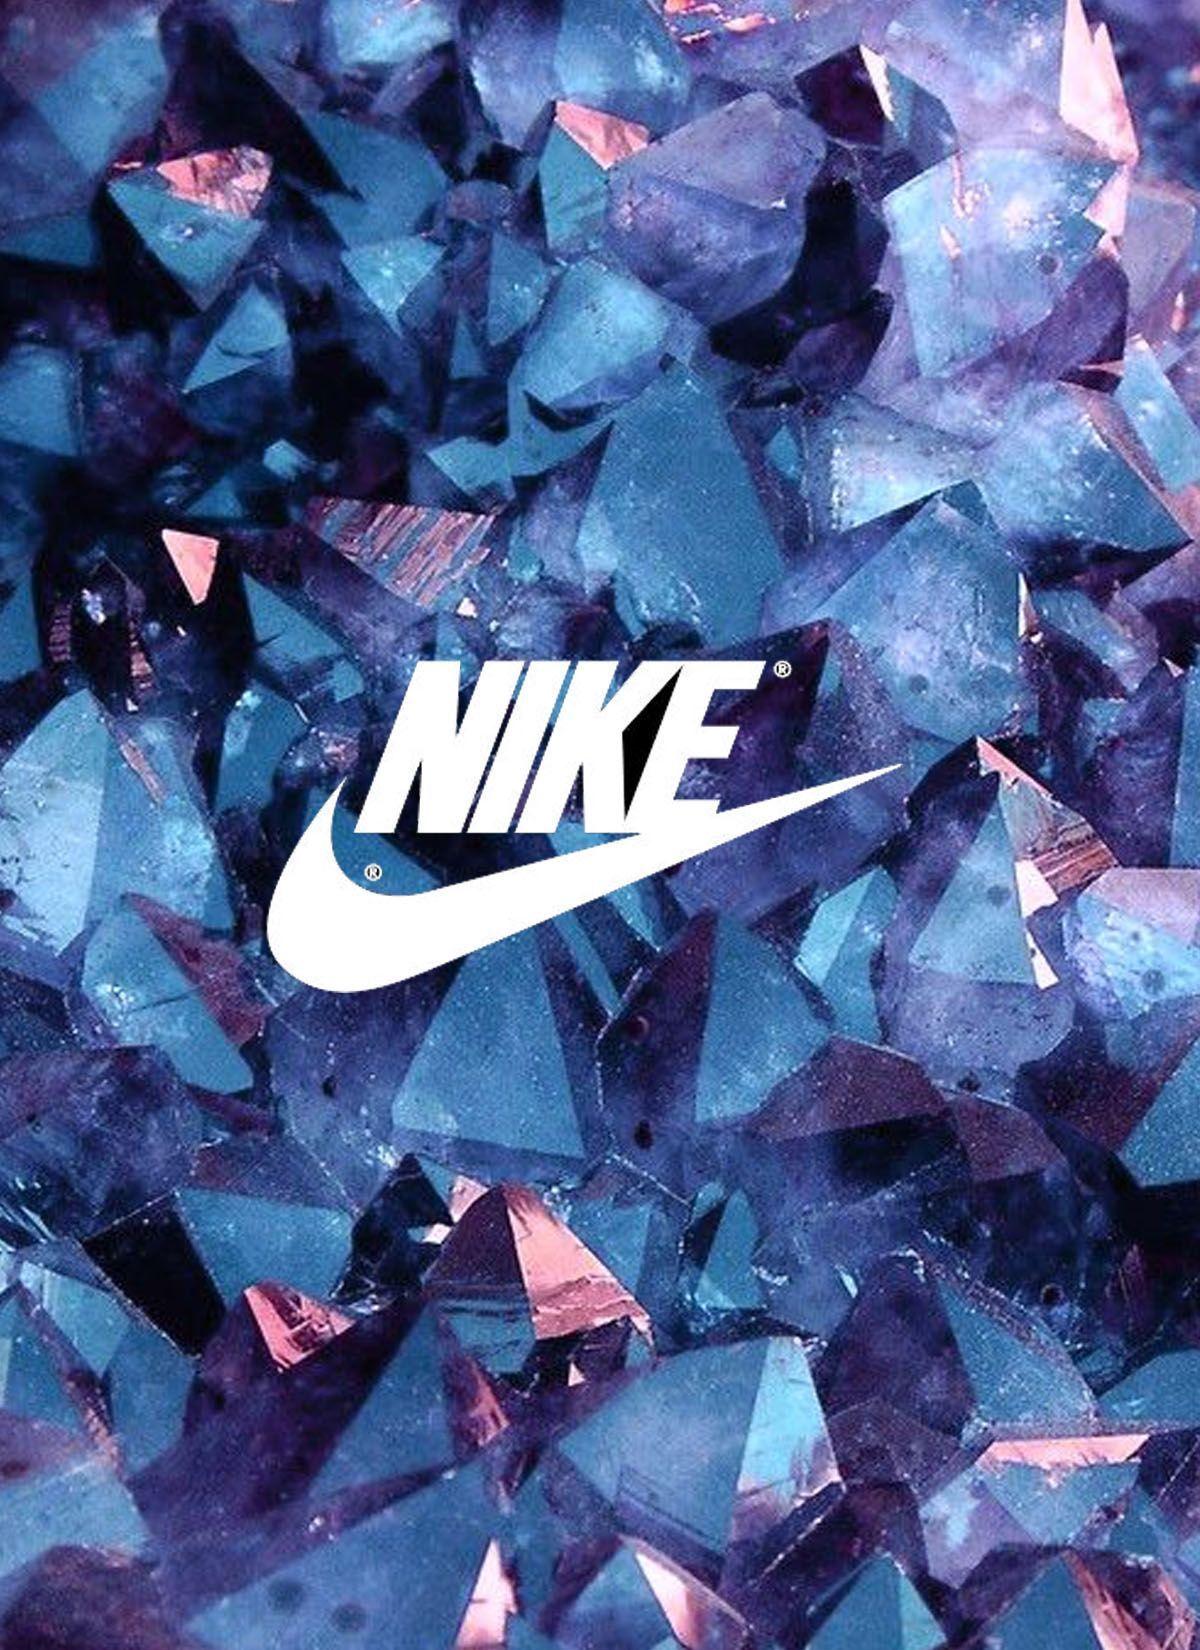 Louis Vuitton Nike  Nike wallpaper, Pink nike wallpaper, Nike